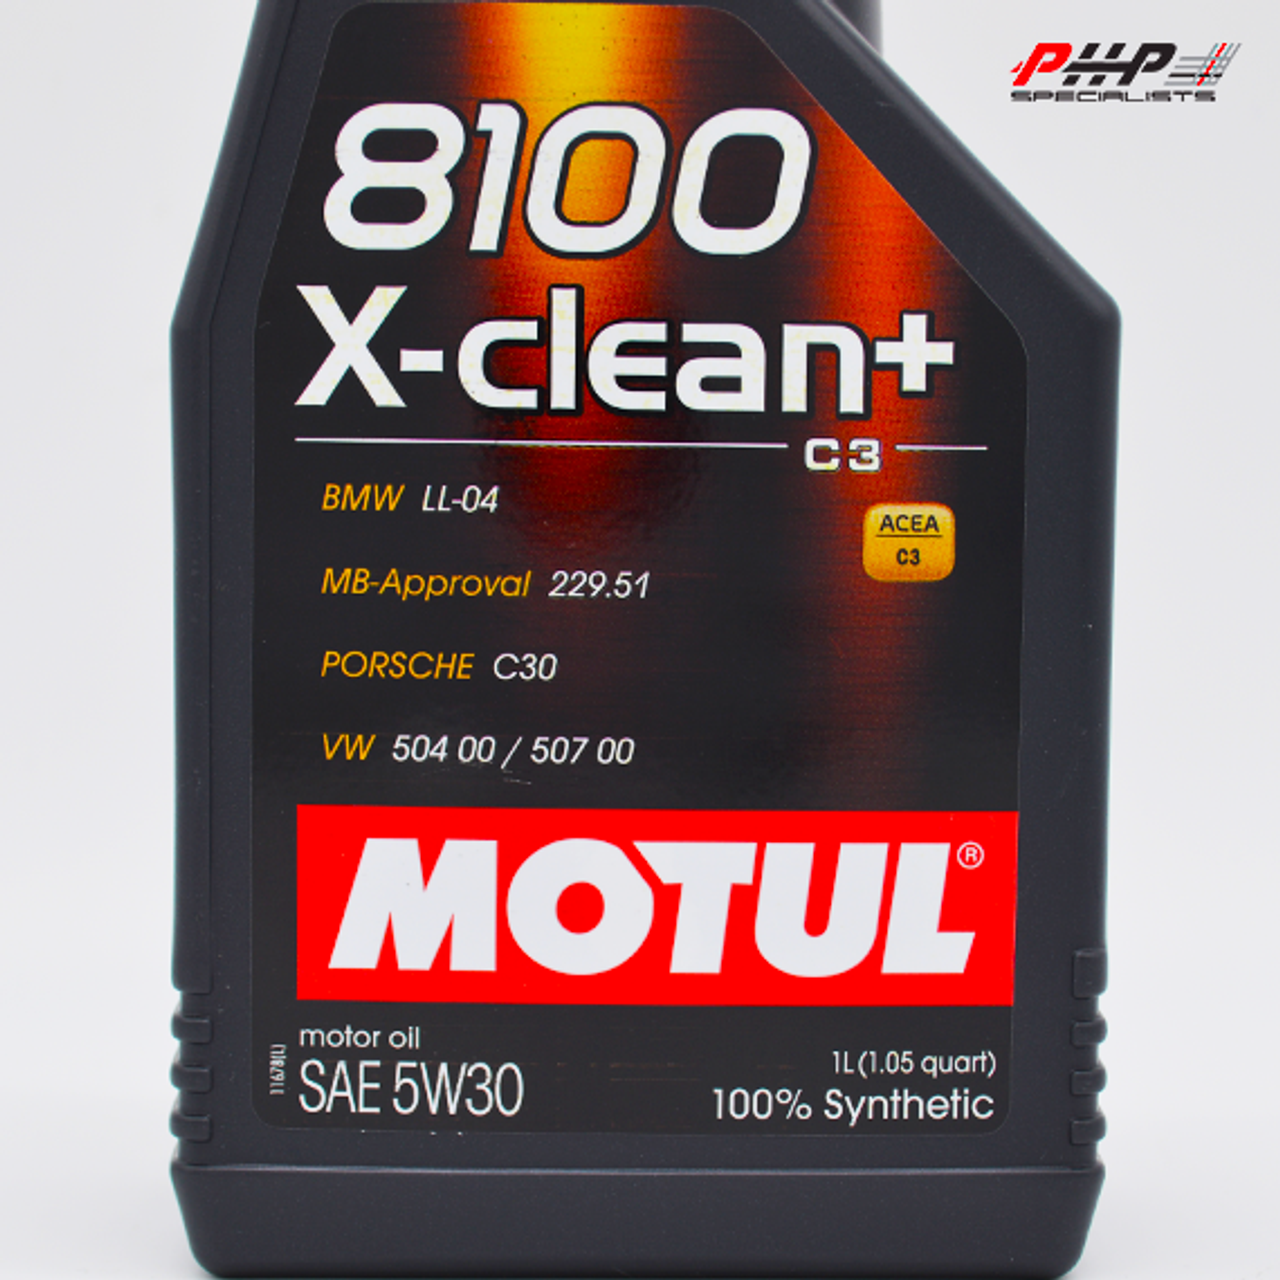 Motul 5W-30 8100 X-Clean+ Engine Oil - 1L